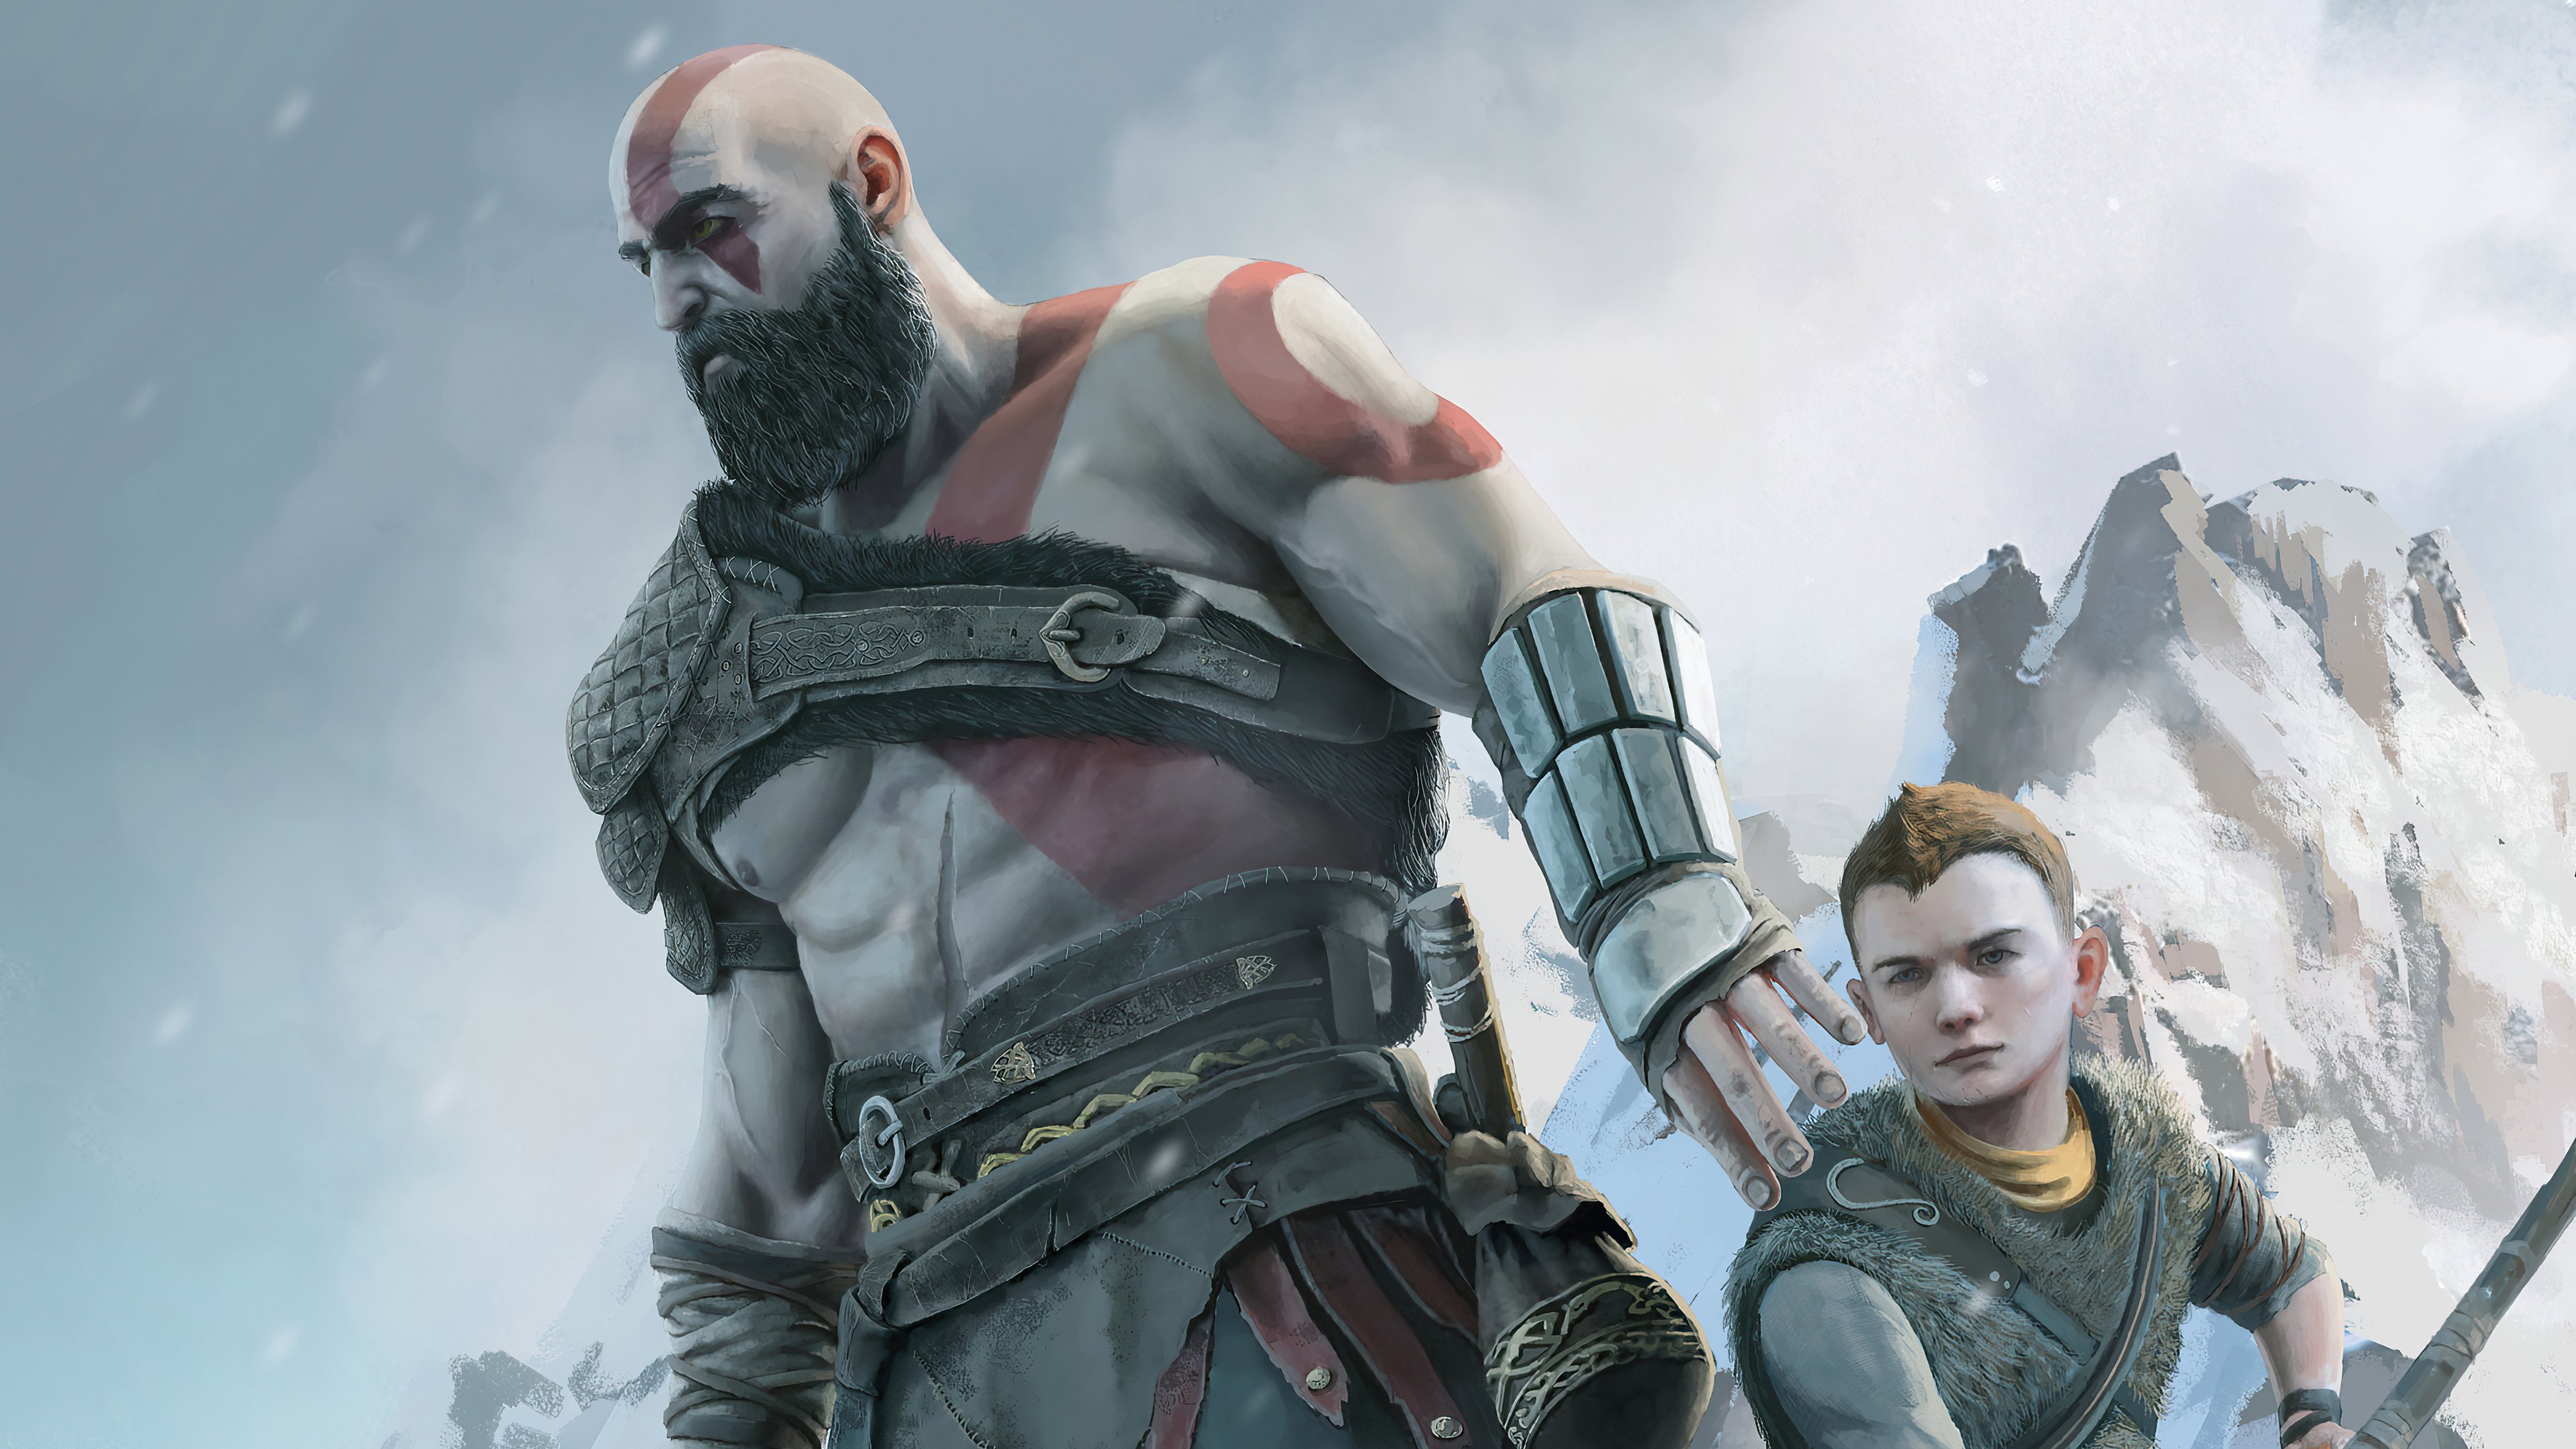 Wallpaper Kratos and Atreus from God of war